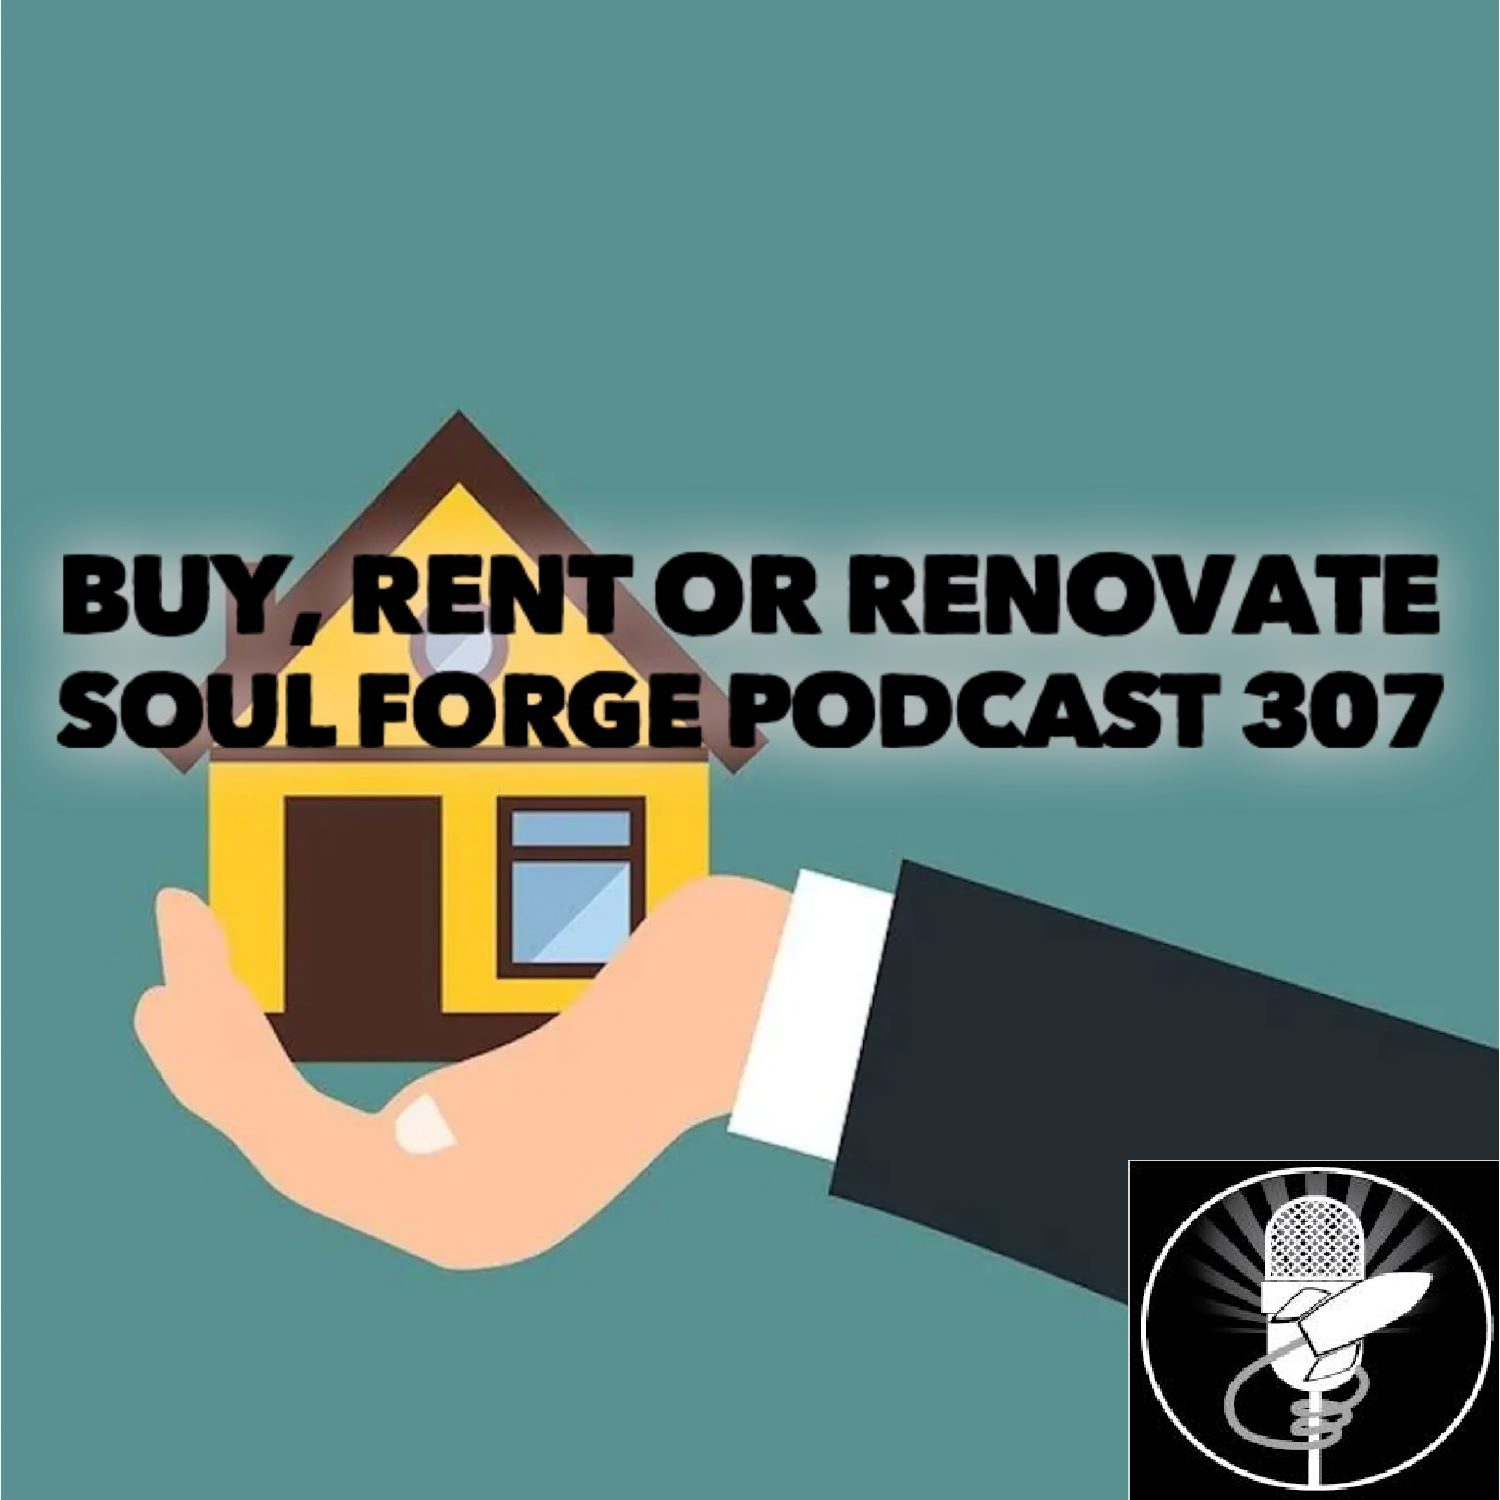 Buy, rent or renovate